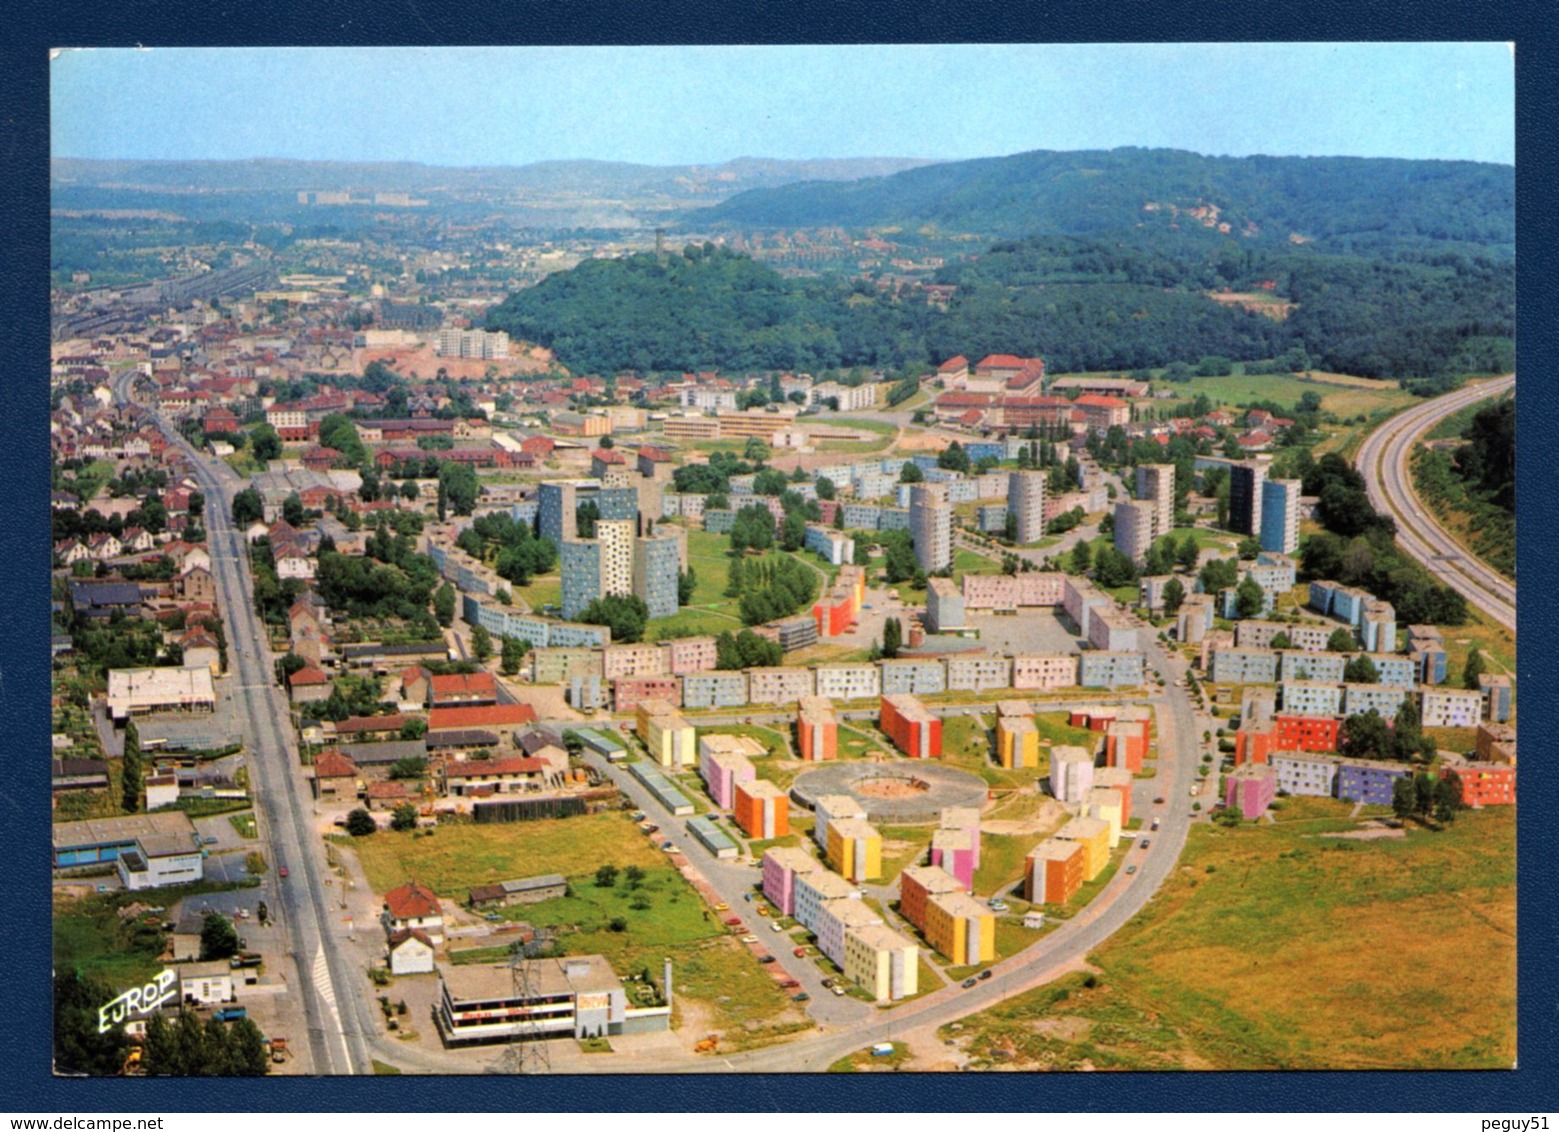 57. Forbach. Vue Aérienne. Cité Du Wiesberg. 1984 - Forbach